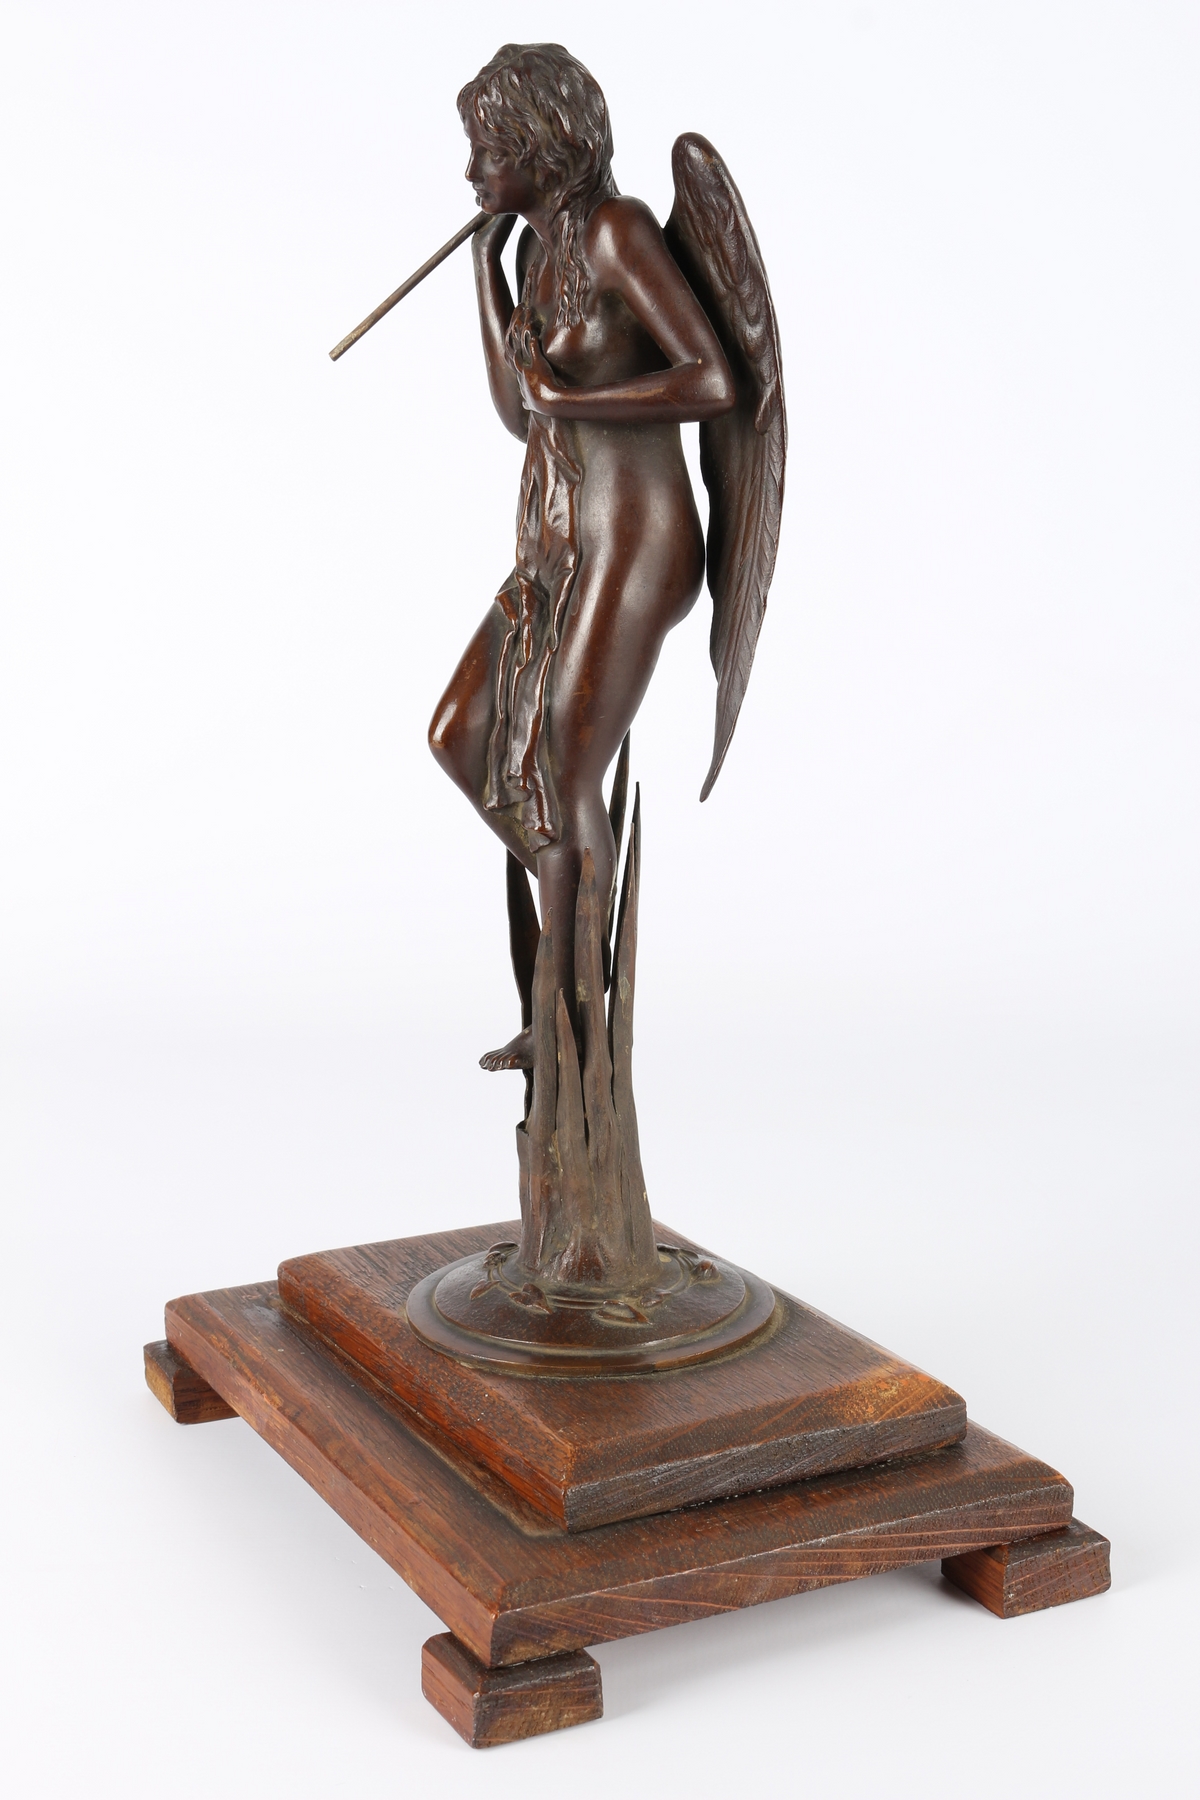 Bronze Engel mit Fanfare um 1900, bronce angel with trumpet around 1900, - Image 2 of 5